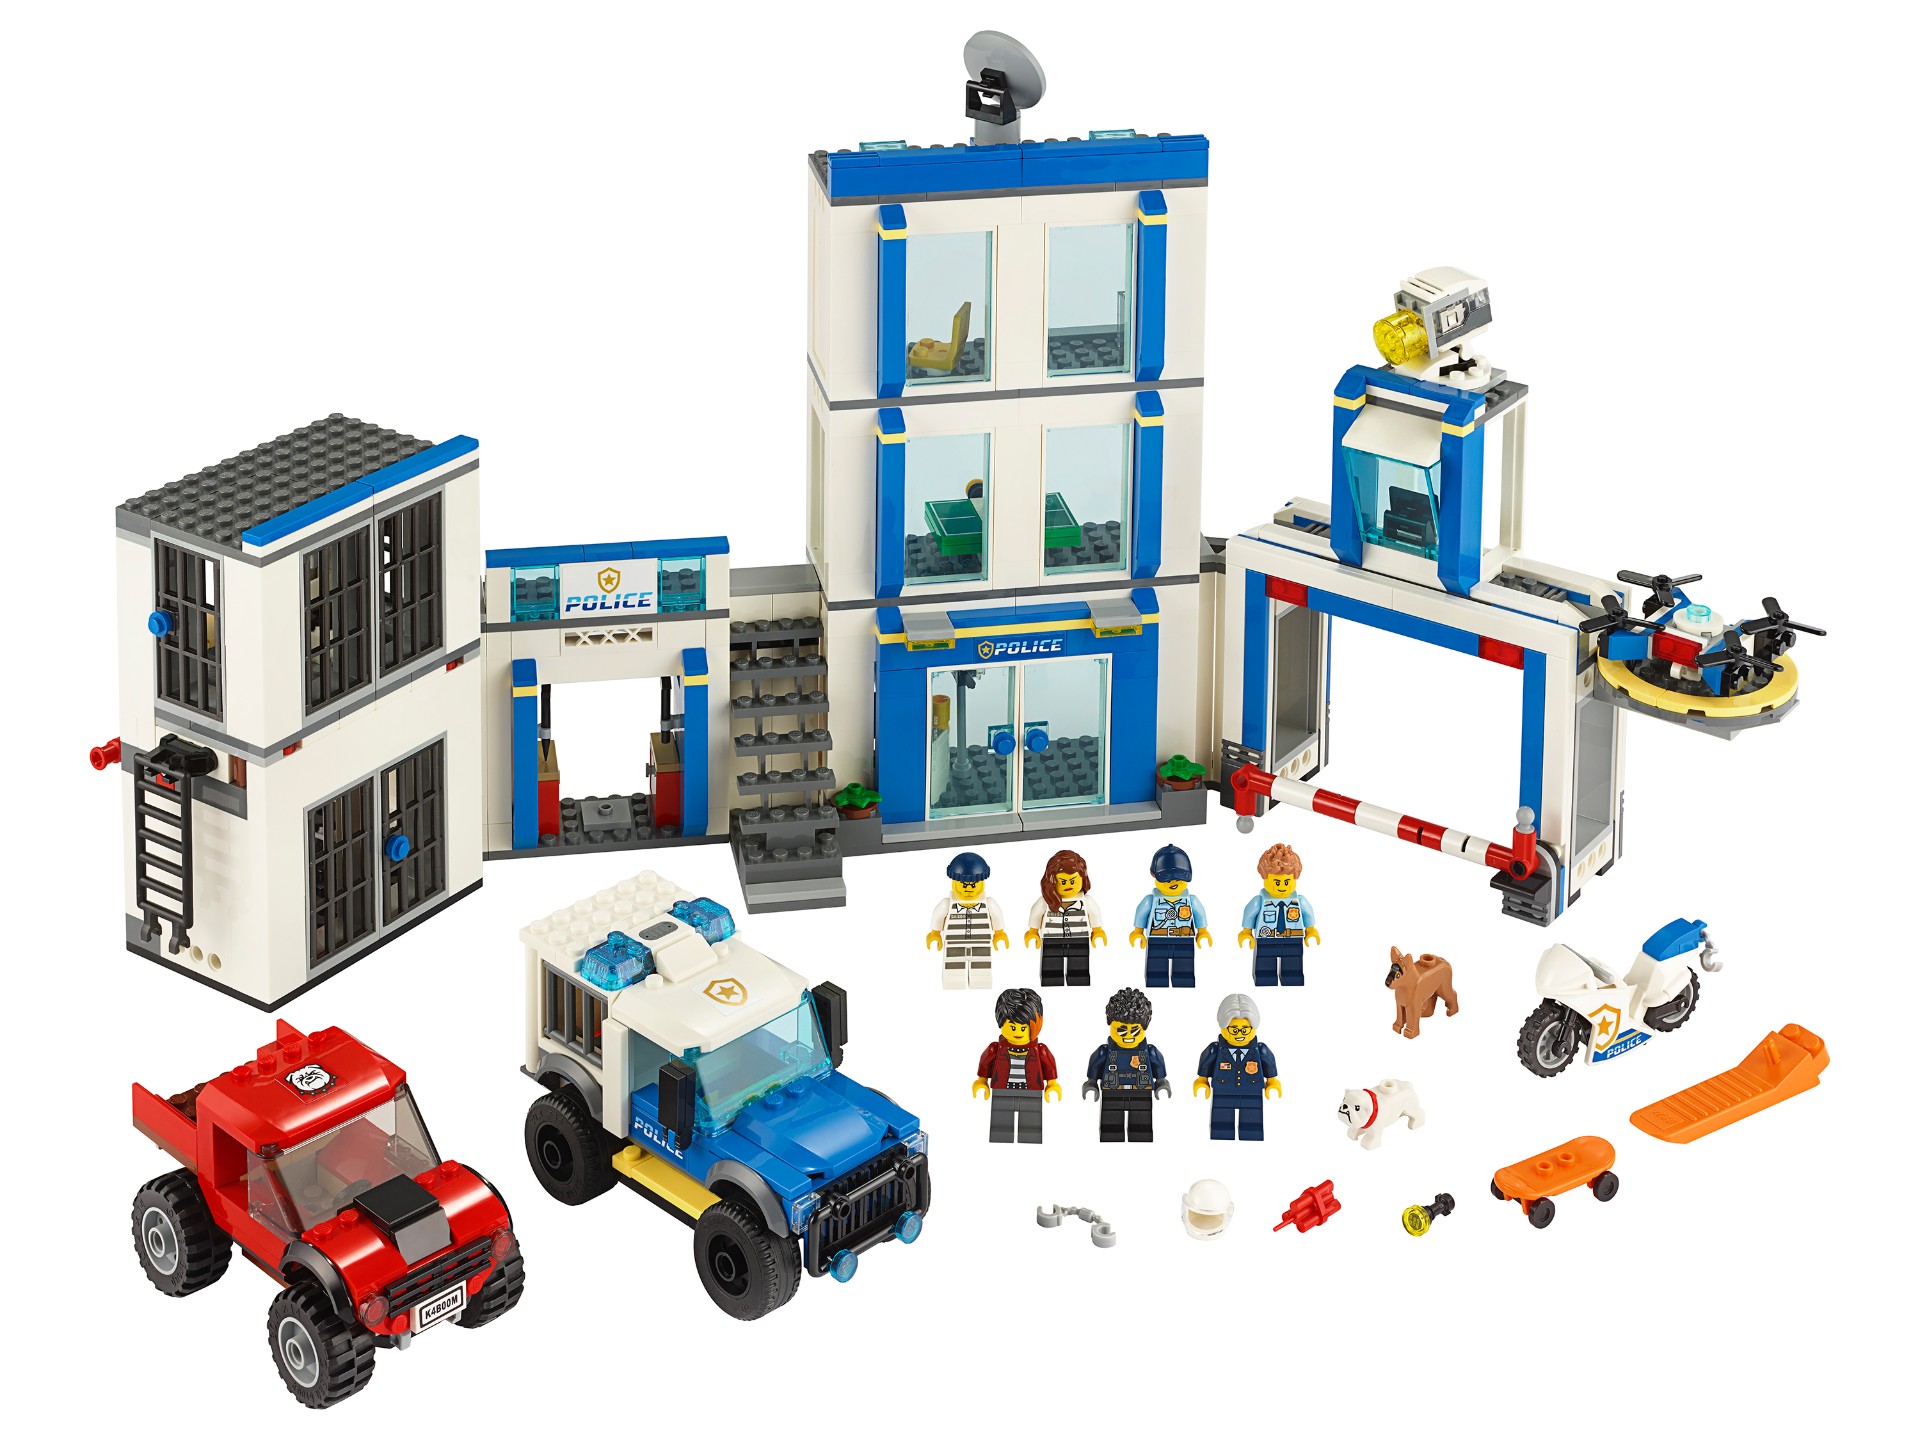 Конструктор LEGO City Police 60246 «Полицейский участок» /  743 детали